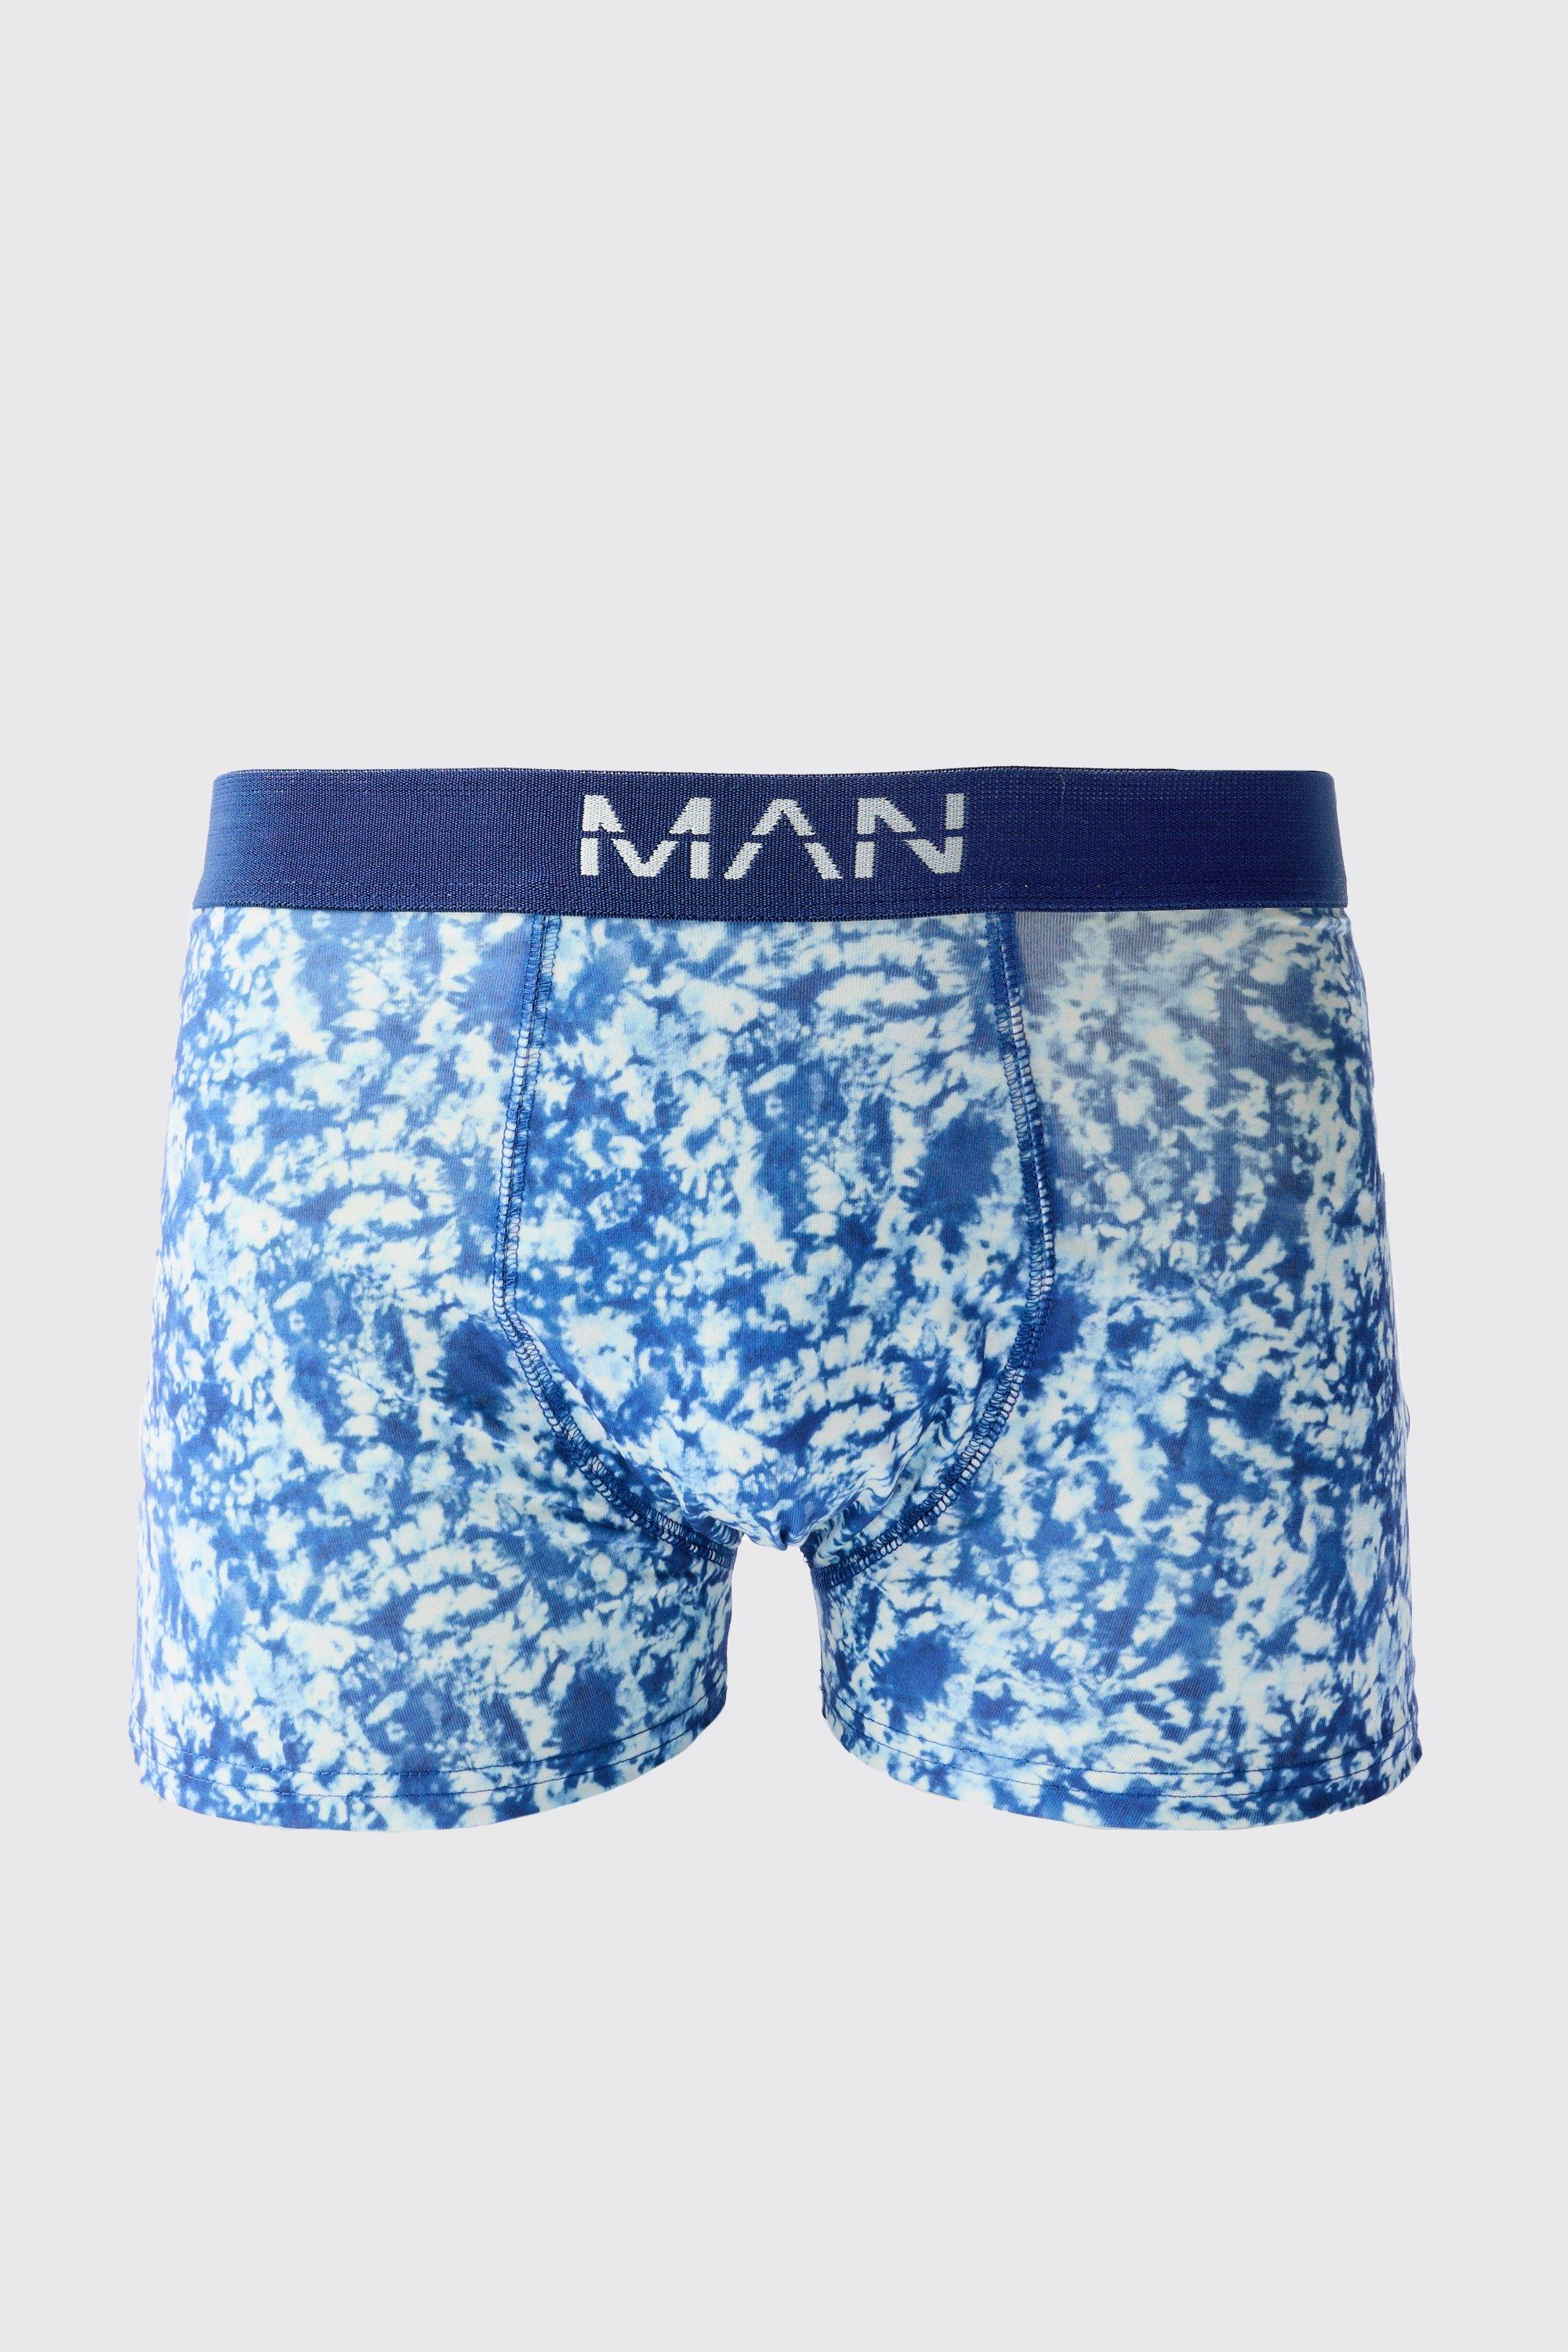 tie dye print boxers homme - bleu - m, bleu